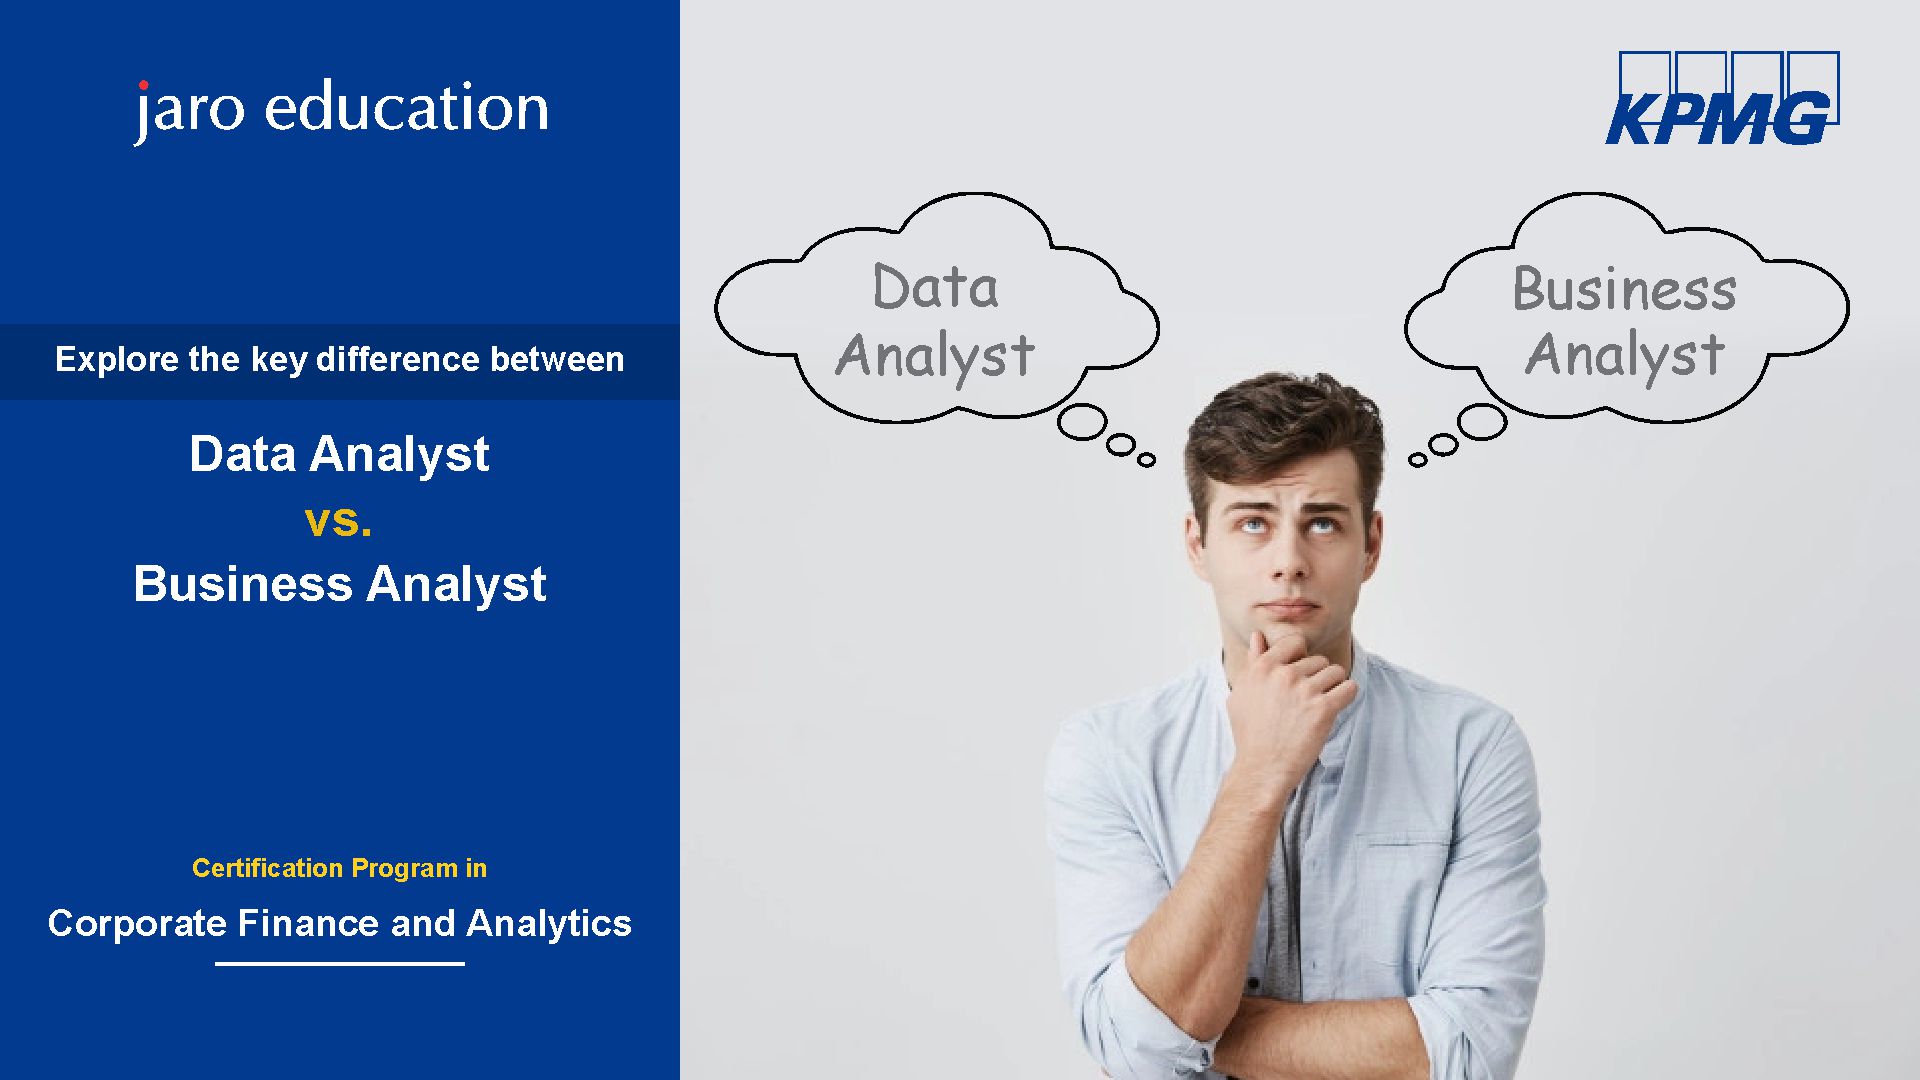 Data-Analyst-vs.-Business-Analyst-Jaro